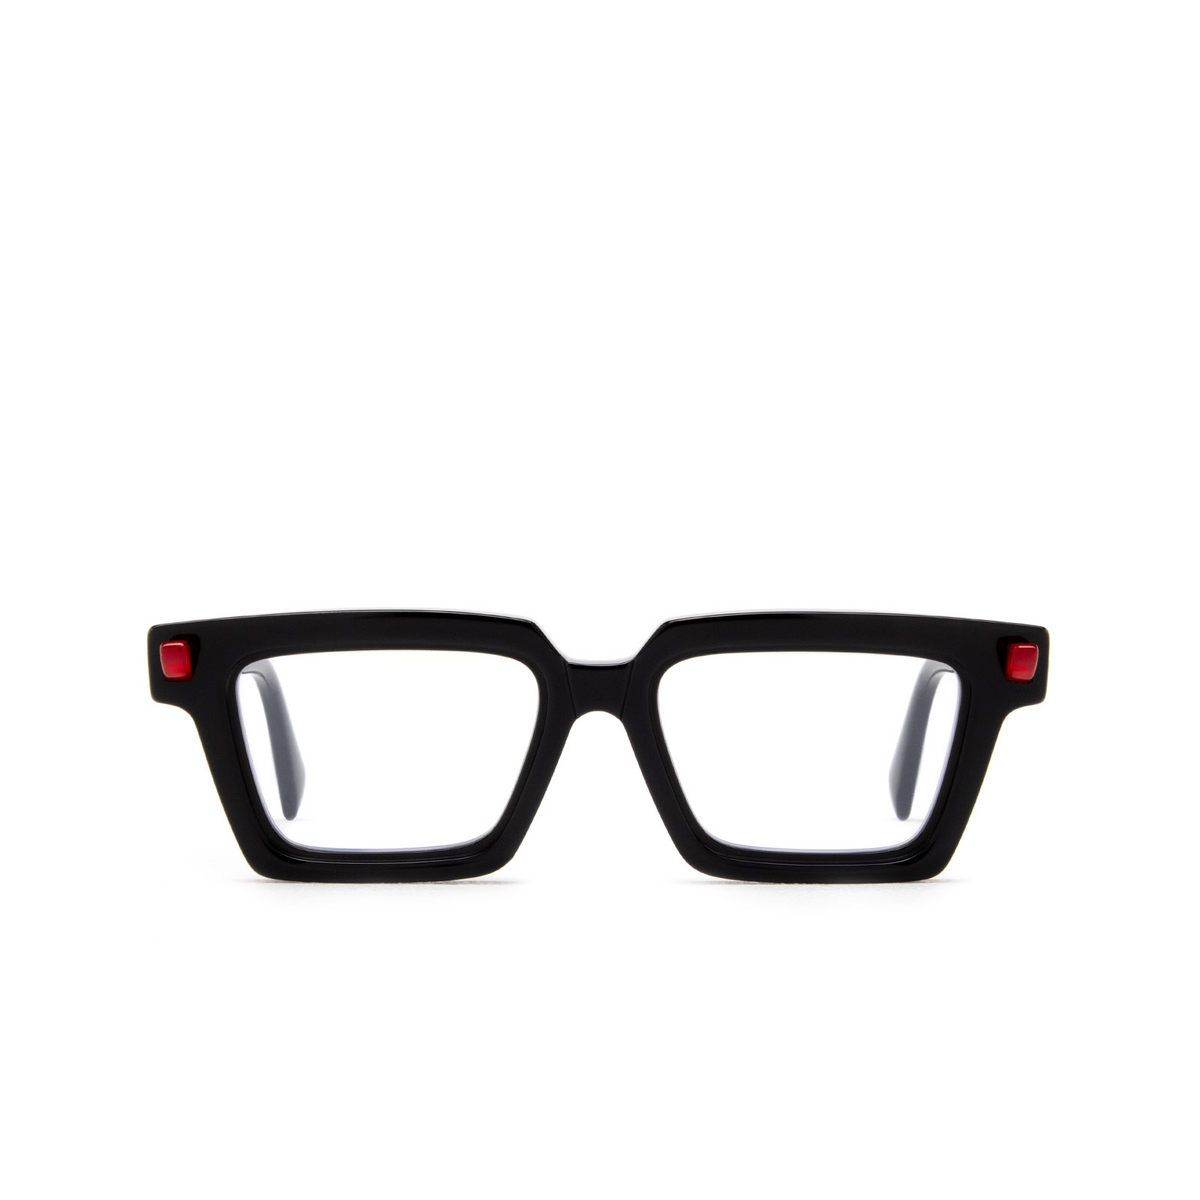 Kuboraum Q2 Eyeglasses BS Black Shine - front view